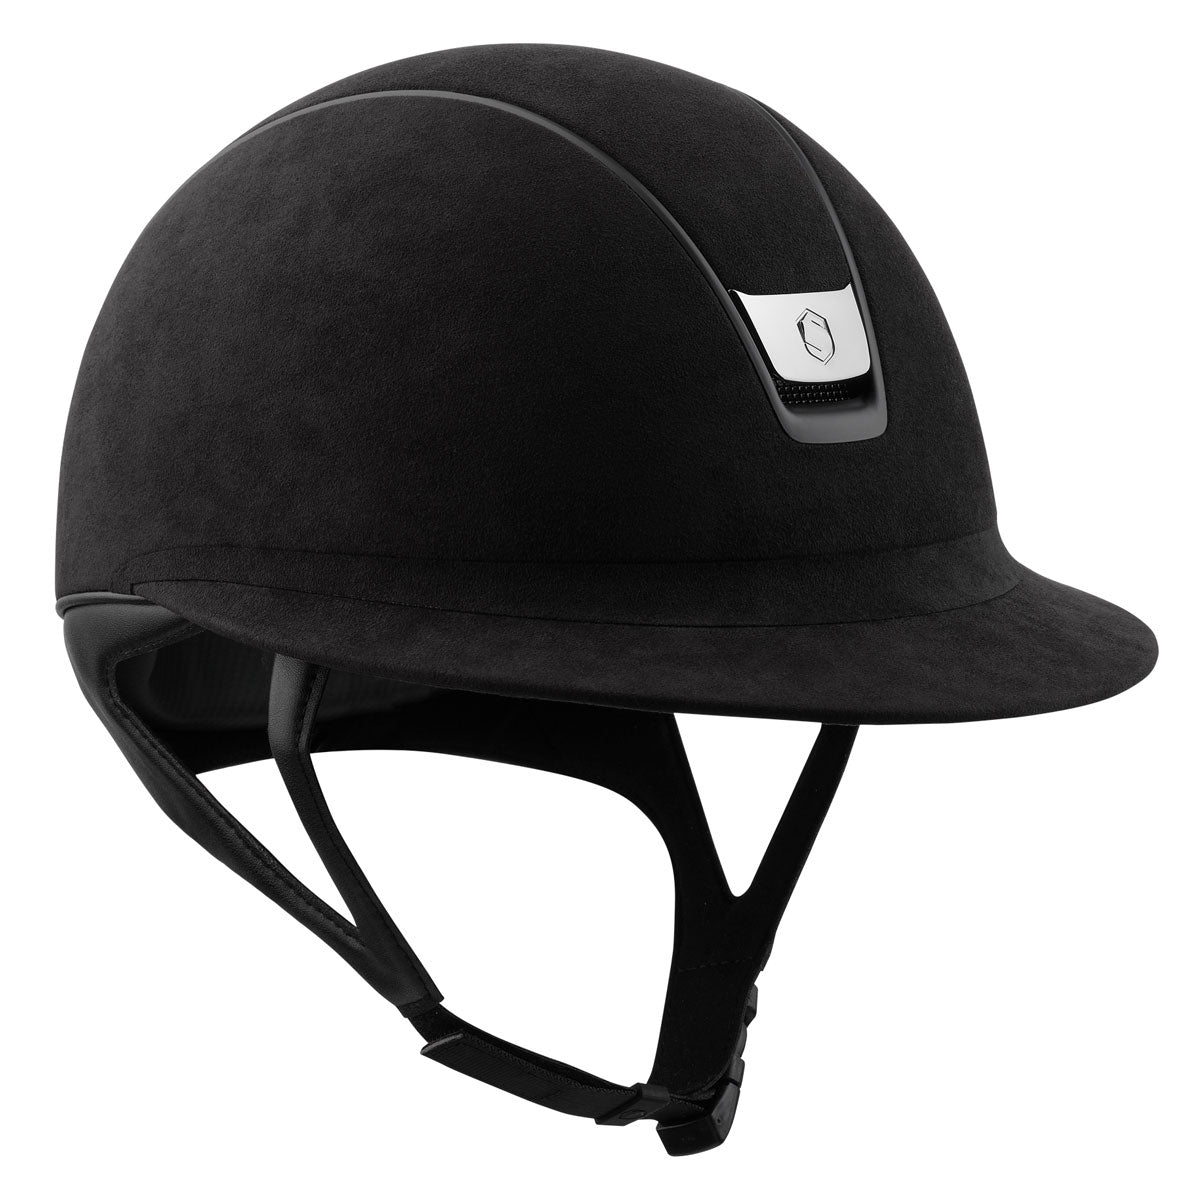 Samshield 2.0 Miss Shield Helmet - Premium